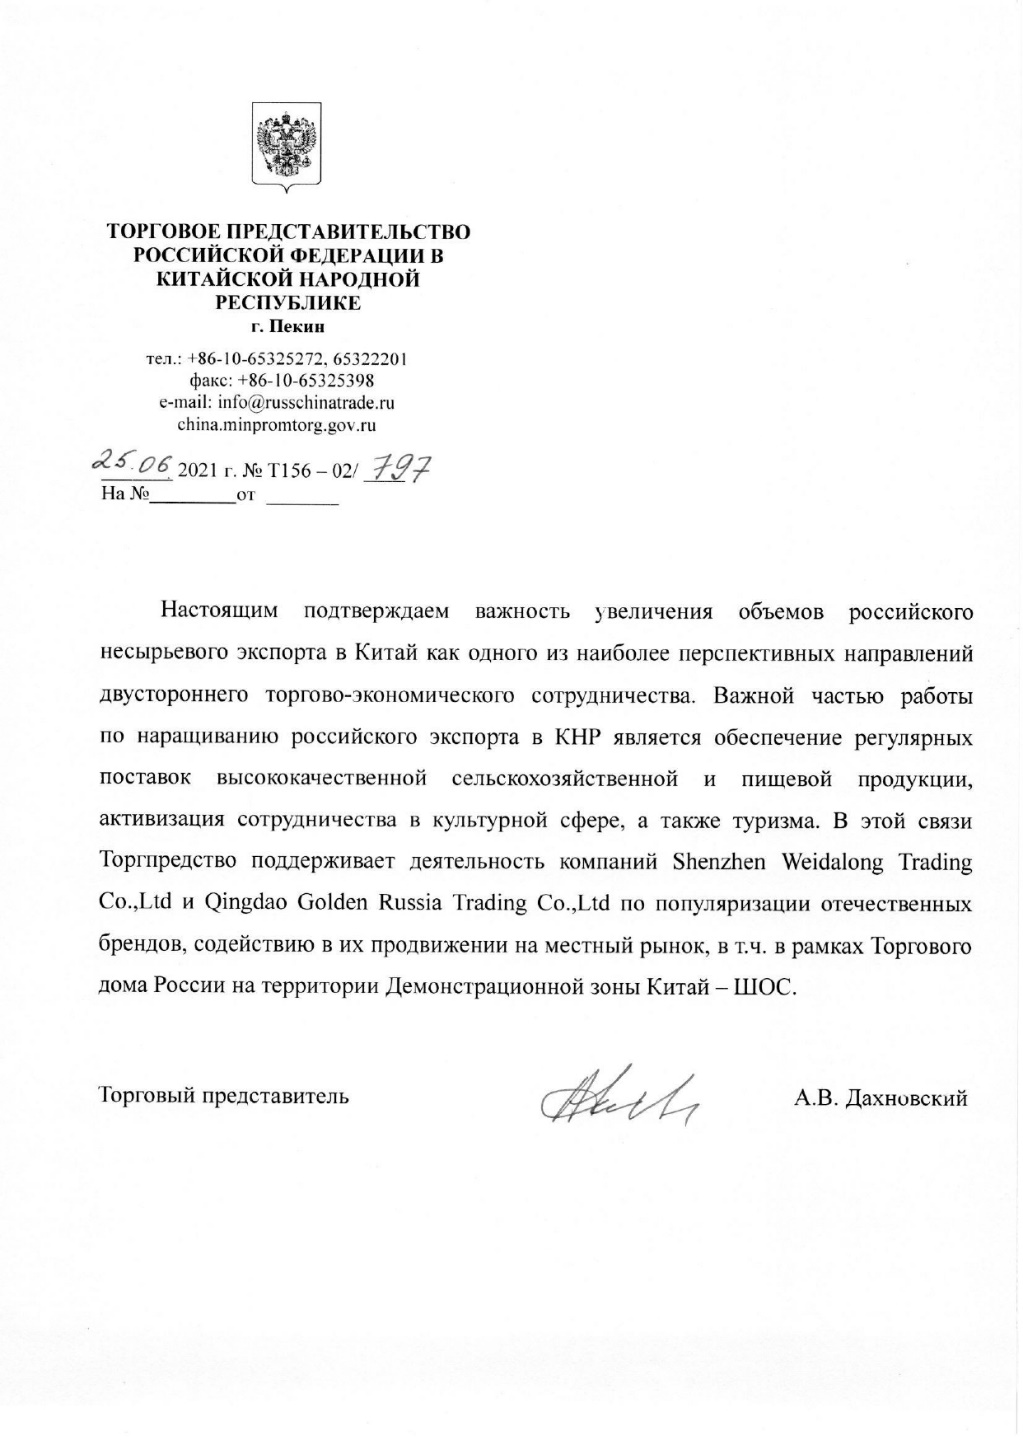 俄罗斯联邦驻华商务代表处Alexey Dakhnovskiy支持函